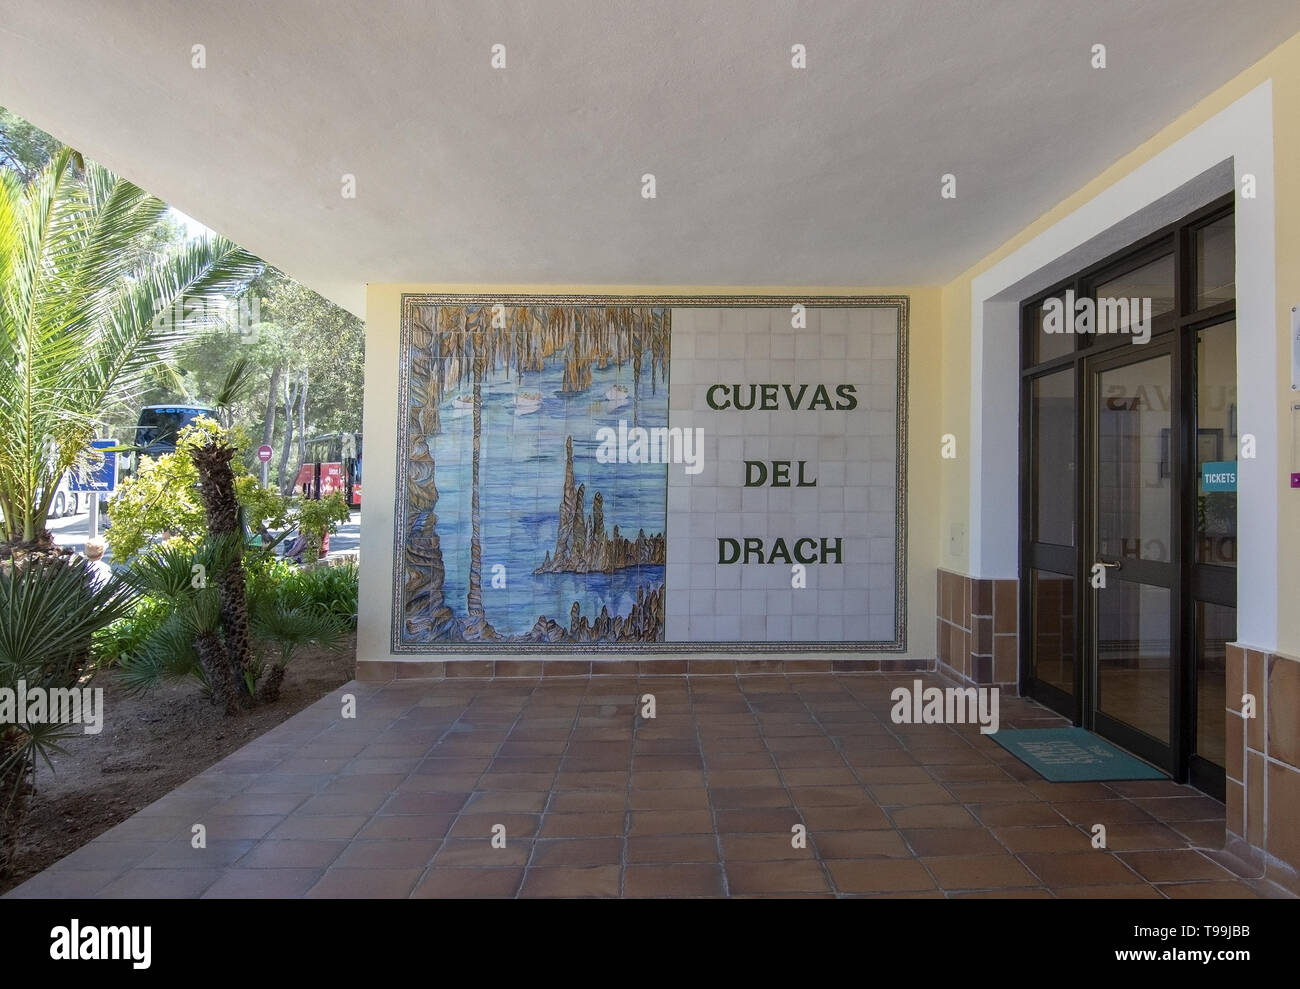 CUEVAS DELS DRACH, Majorque, Espagne - 16 MAI 2019 : Wall design icône sur une journée ensoleillée le 16 mai 2019 dans Cuevas dels Drach, Mallorca, Espagne. Banque D'Images